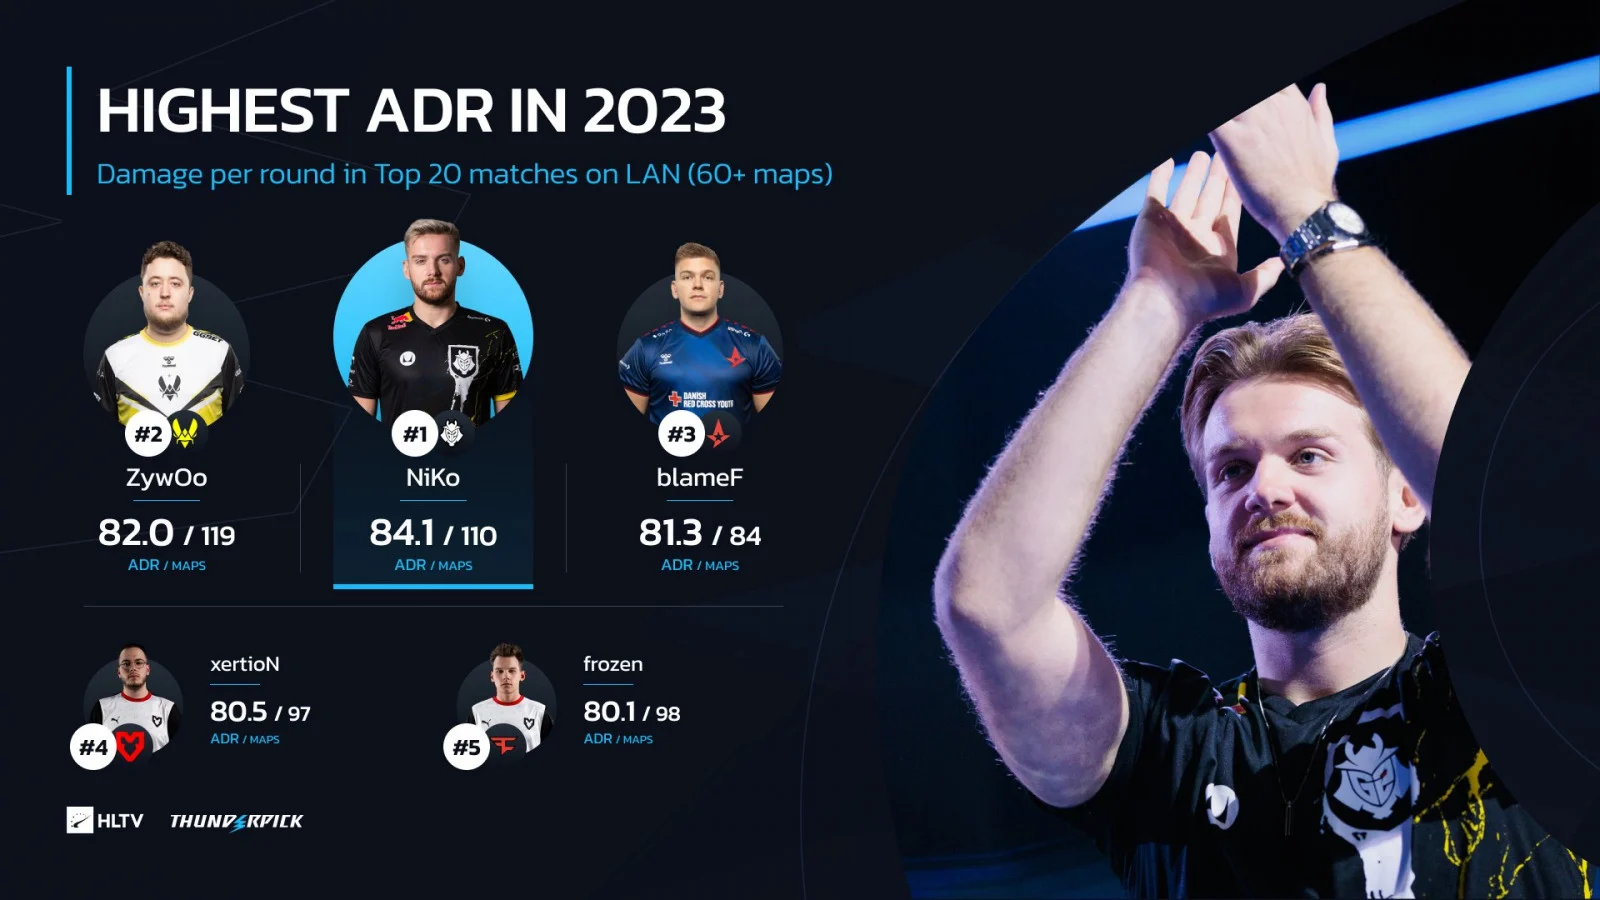 Лучшие игроки по ADR на LAN-турнирах в 2023 году